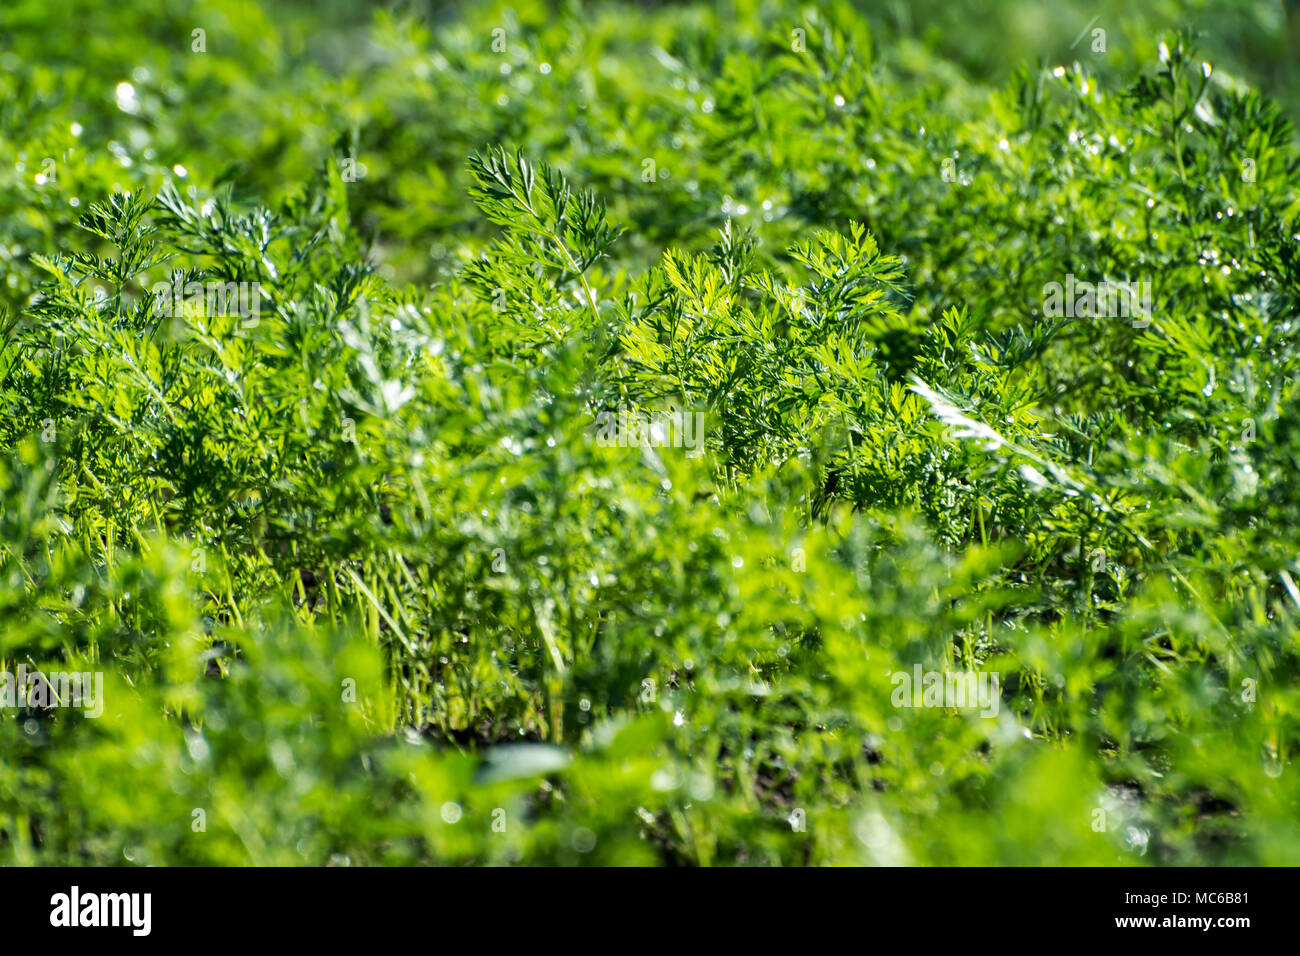 Close-up of green carotte biologique cultivée laisse à l'extérieur. Selective focus, SDF. Banque D'Images